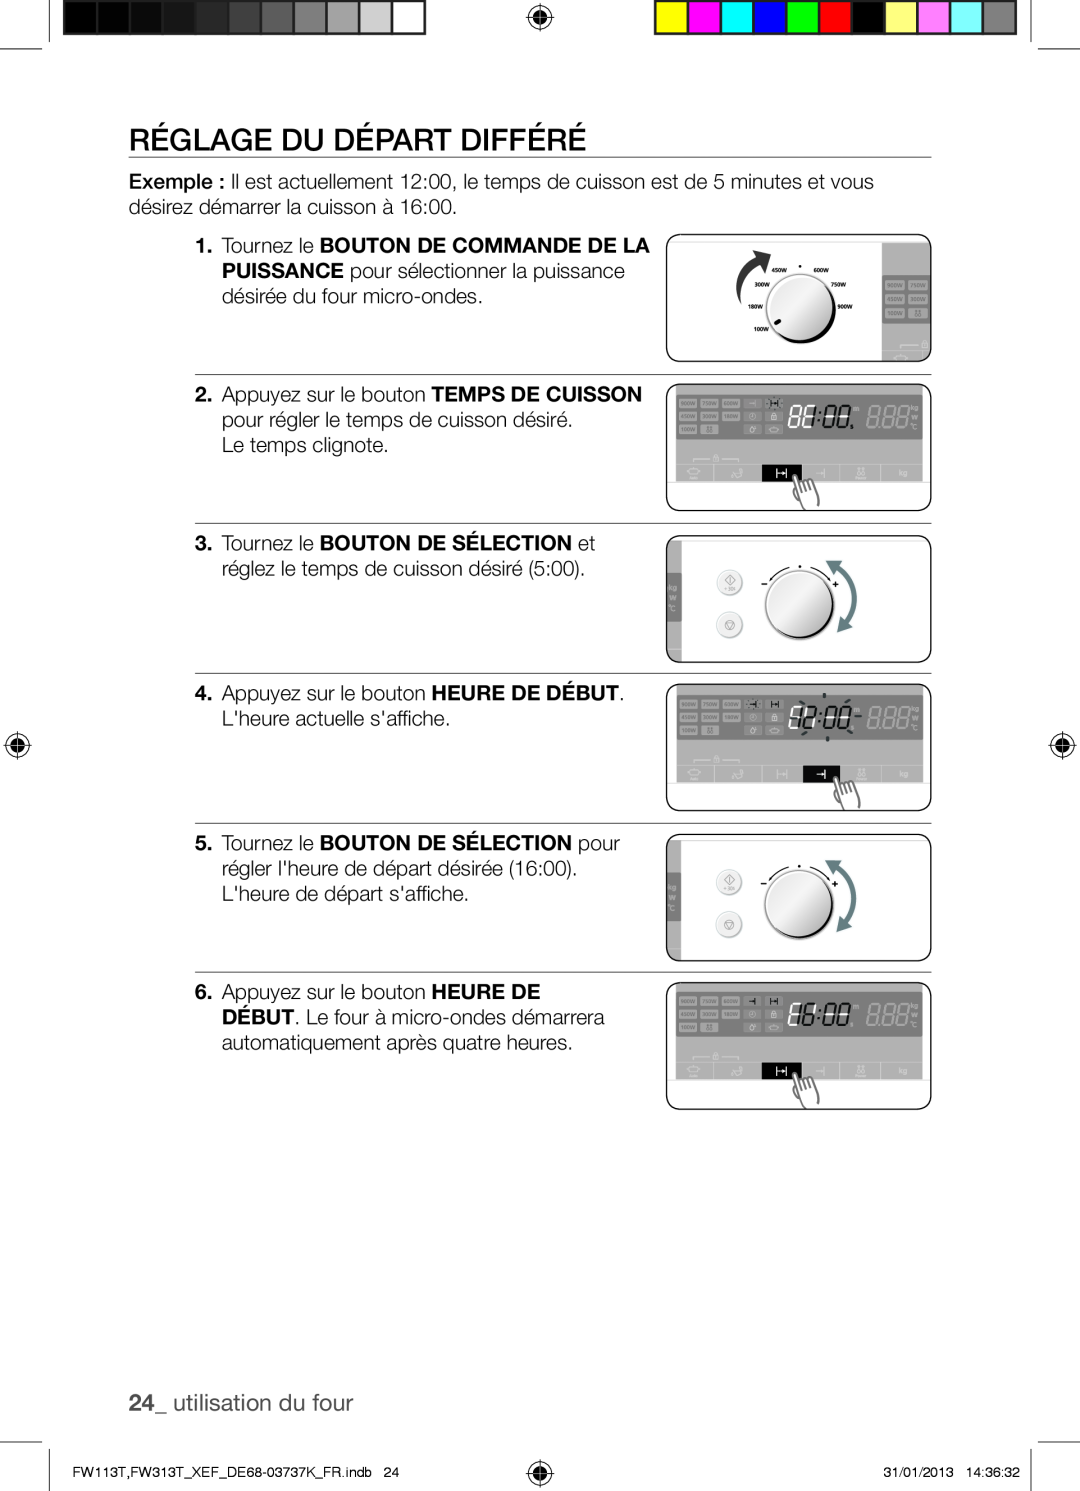 Samsung FW113T002/XEF manual Réglage Du Départ Différé, utilisation du four 